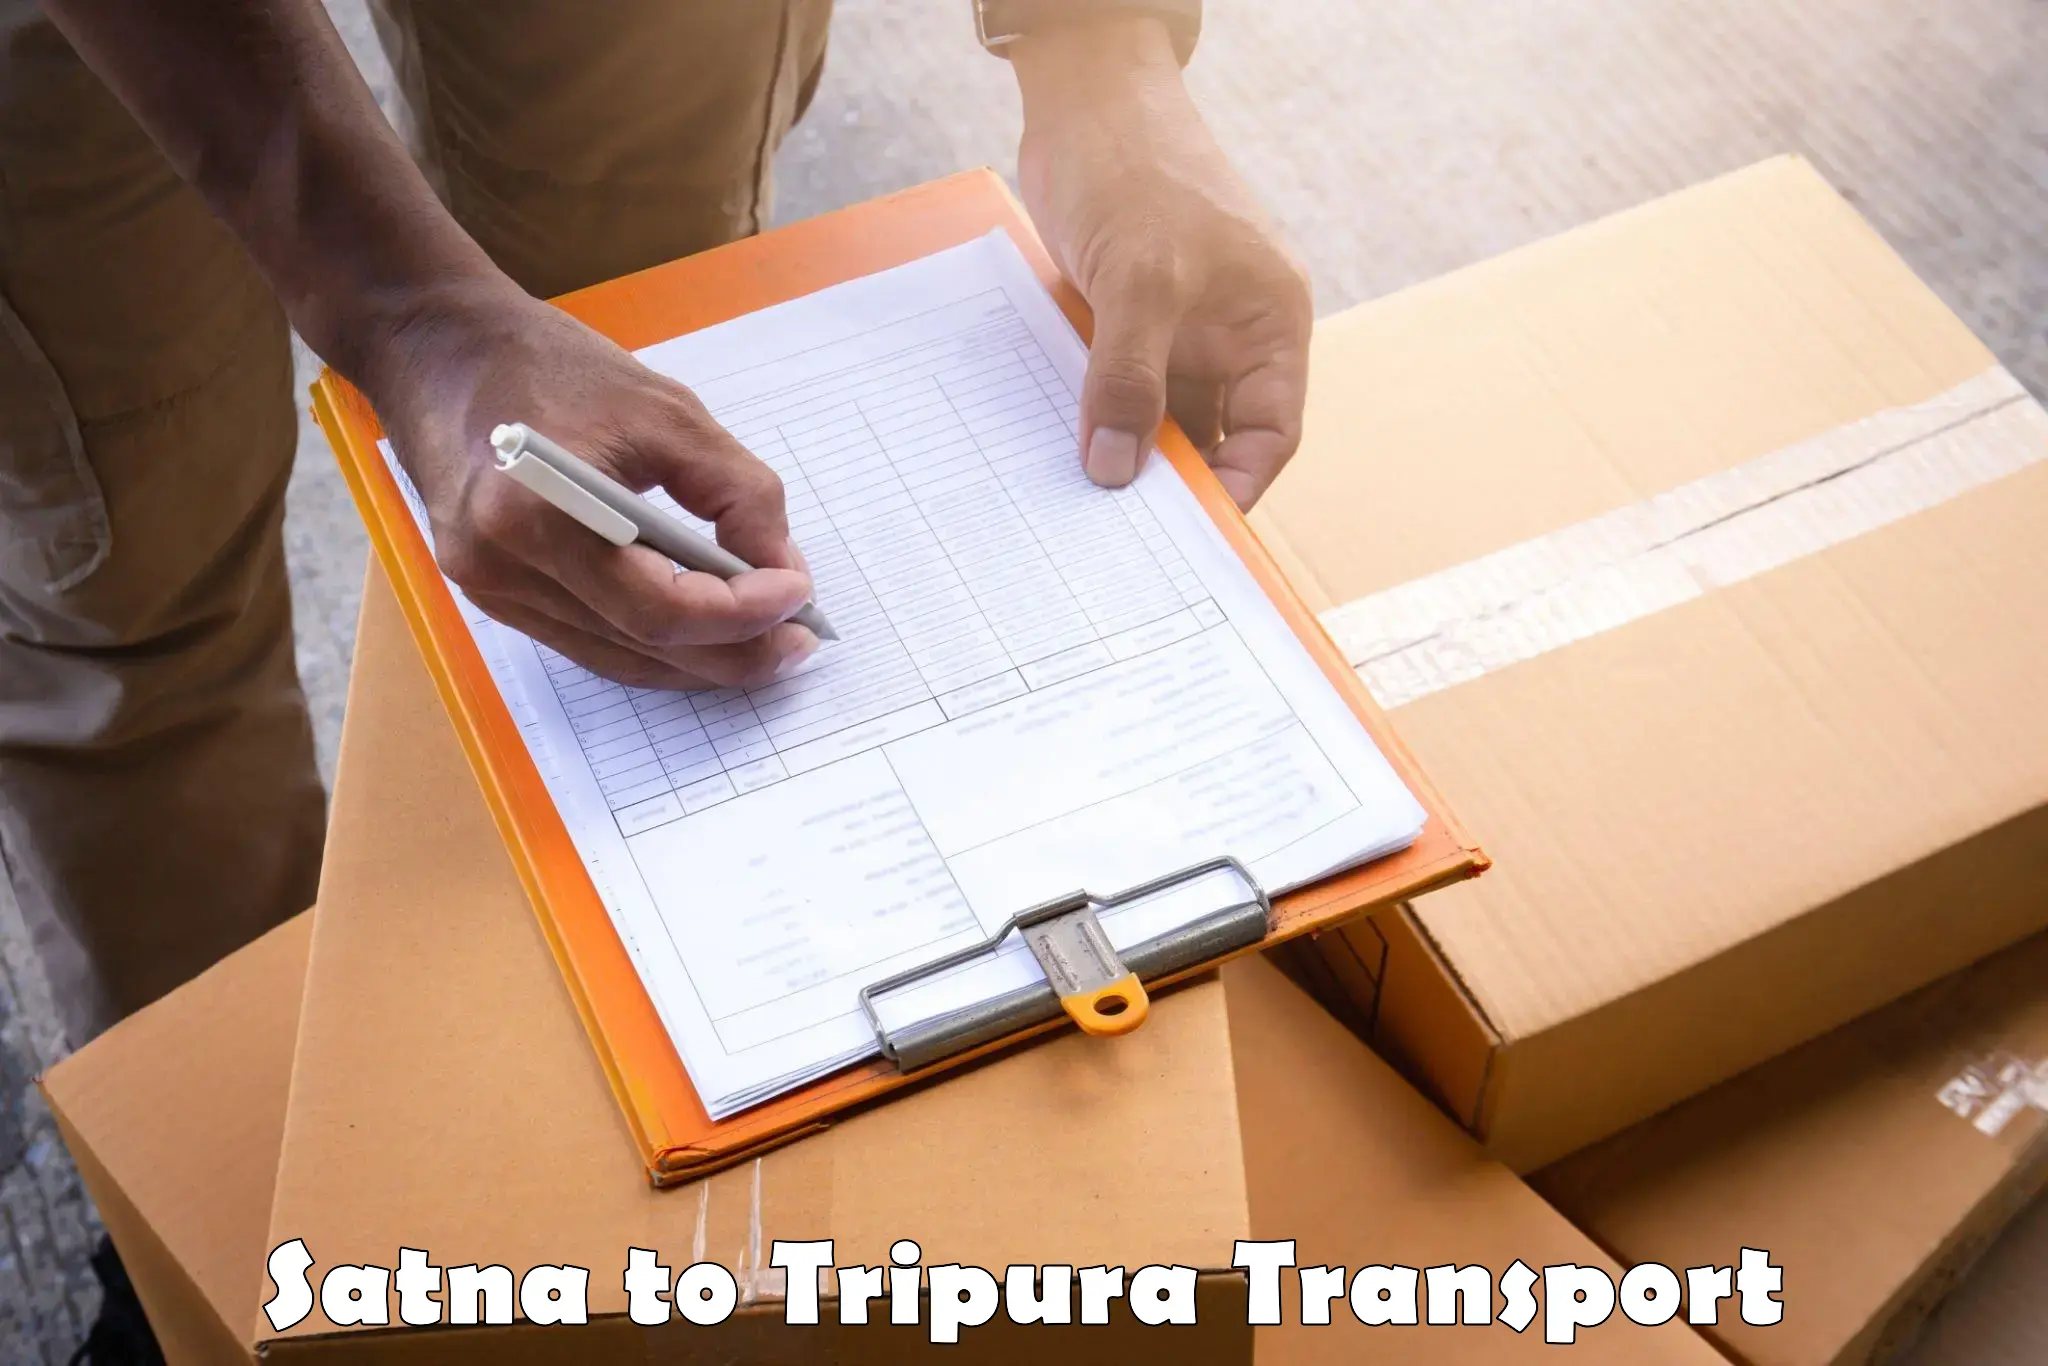 Road transport online services Satna to Udaipur Tripura